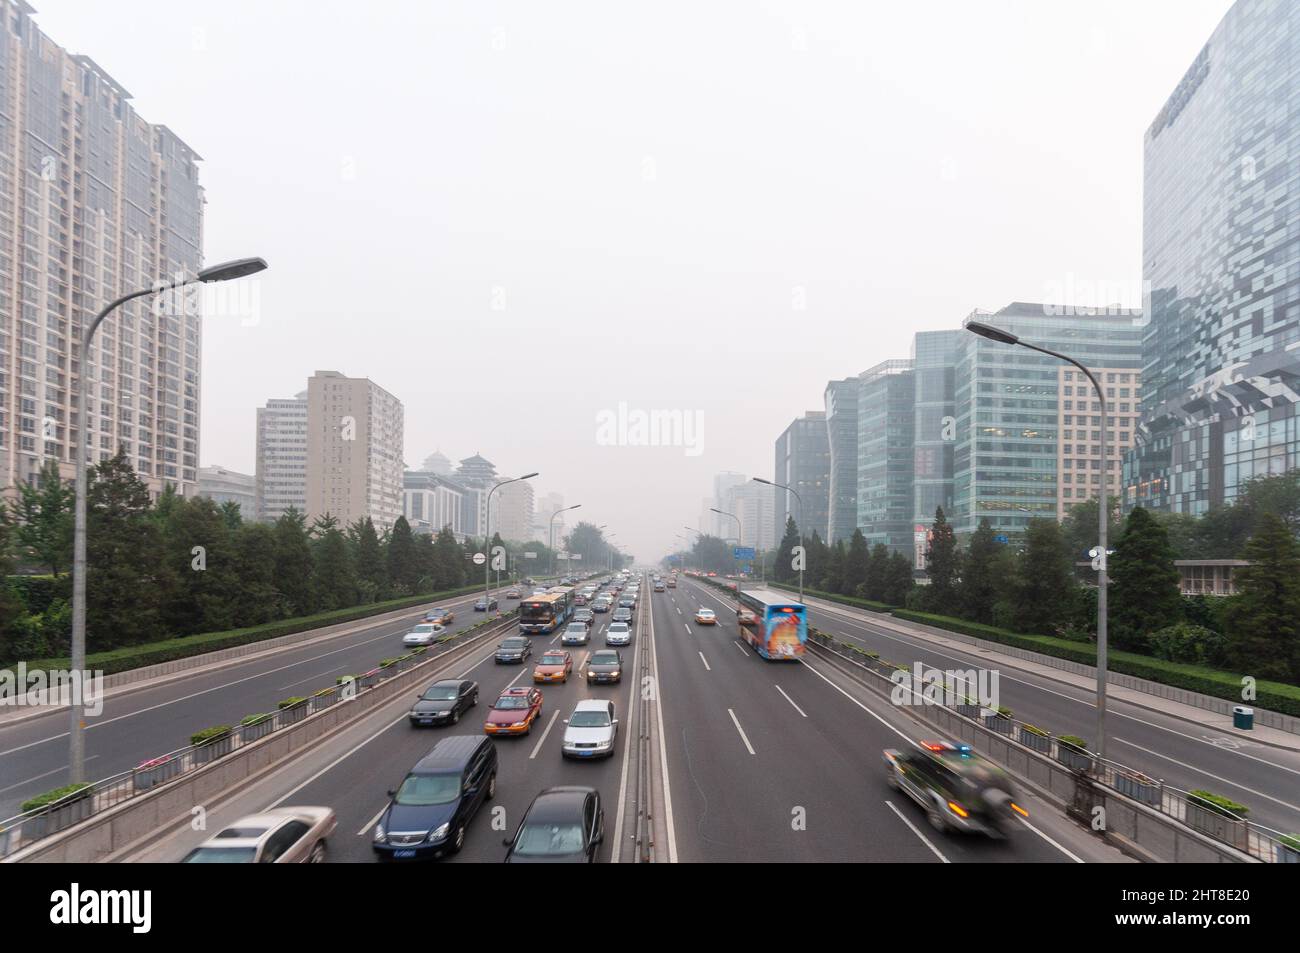 Beijing, China - 9 de agosto de 2010: La contaminación del aire envuelve edificios moden de oficinas que bordean la segunda carretera de circunvalación de Beijing. Foto de stock